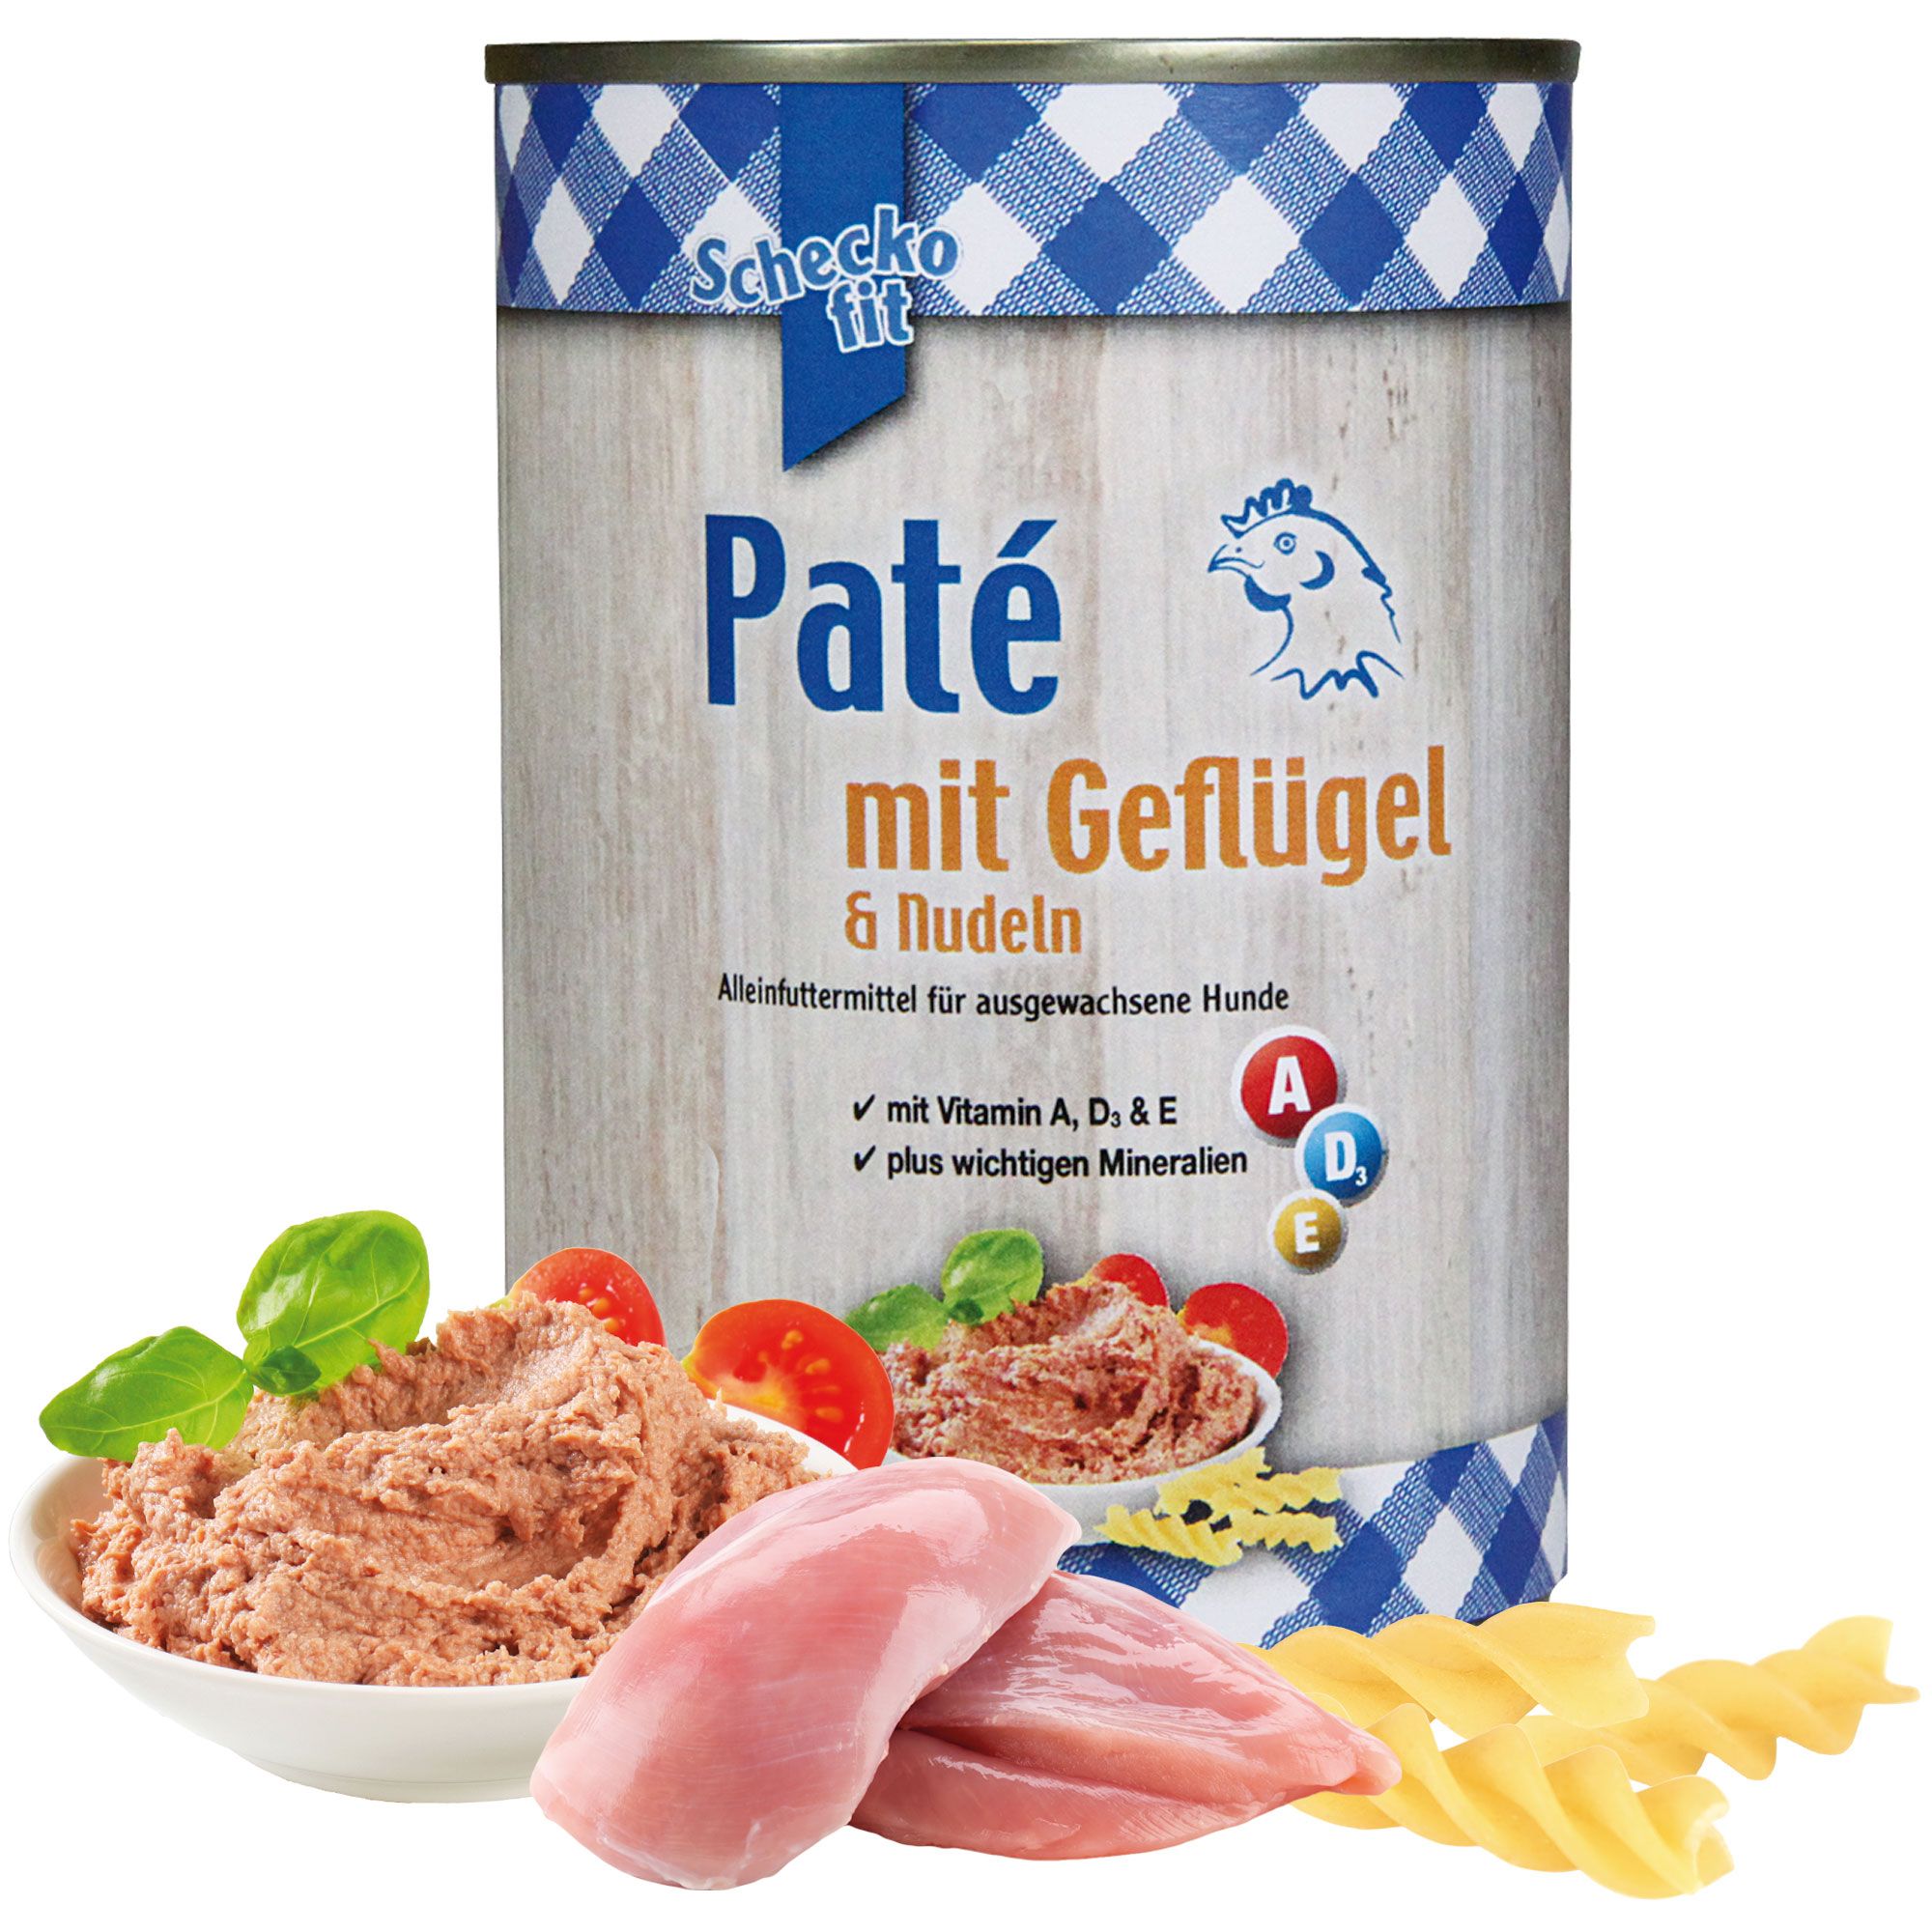 Schecker - Paté mit Geflügel & Nudeln